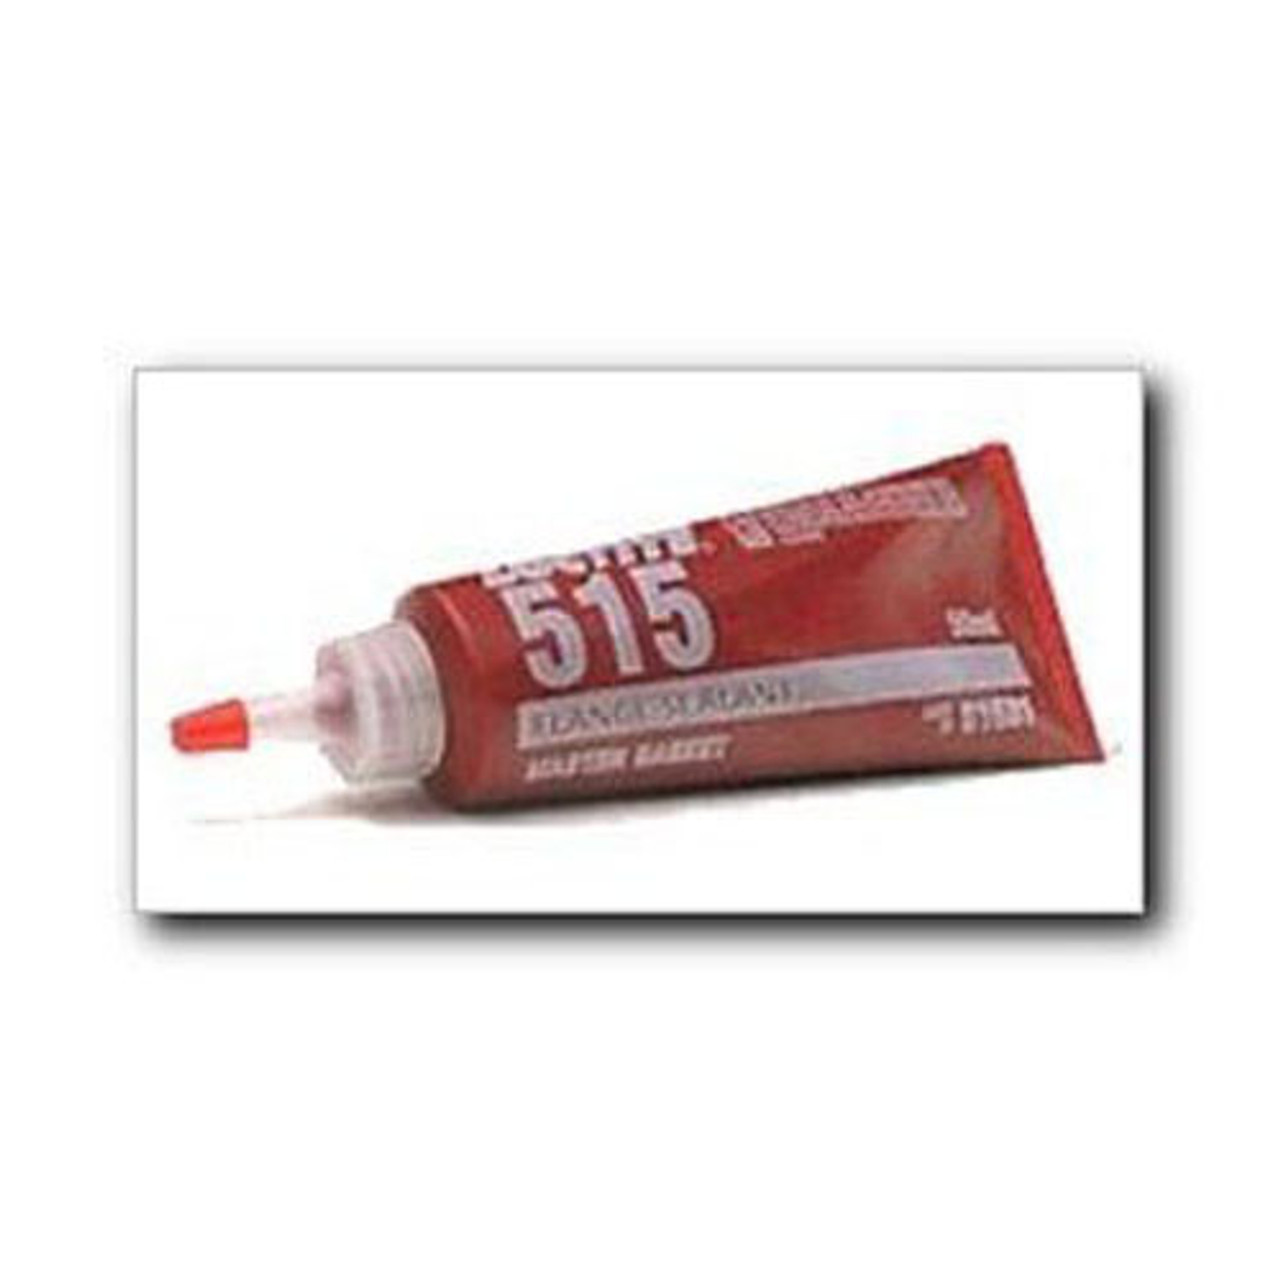 Loctite 518 Gasket Maker/Flange Sealant 50 ml Tube, 2096059